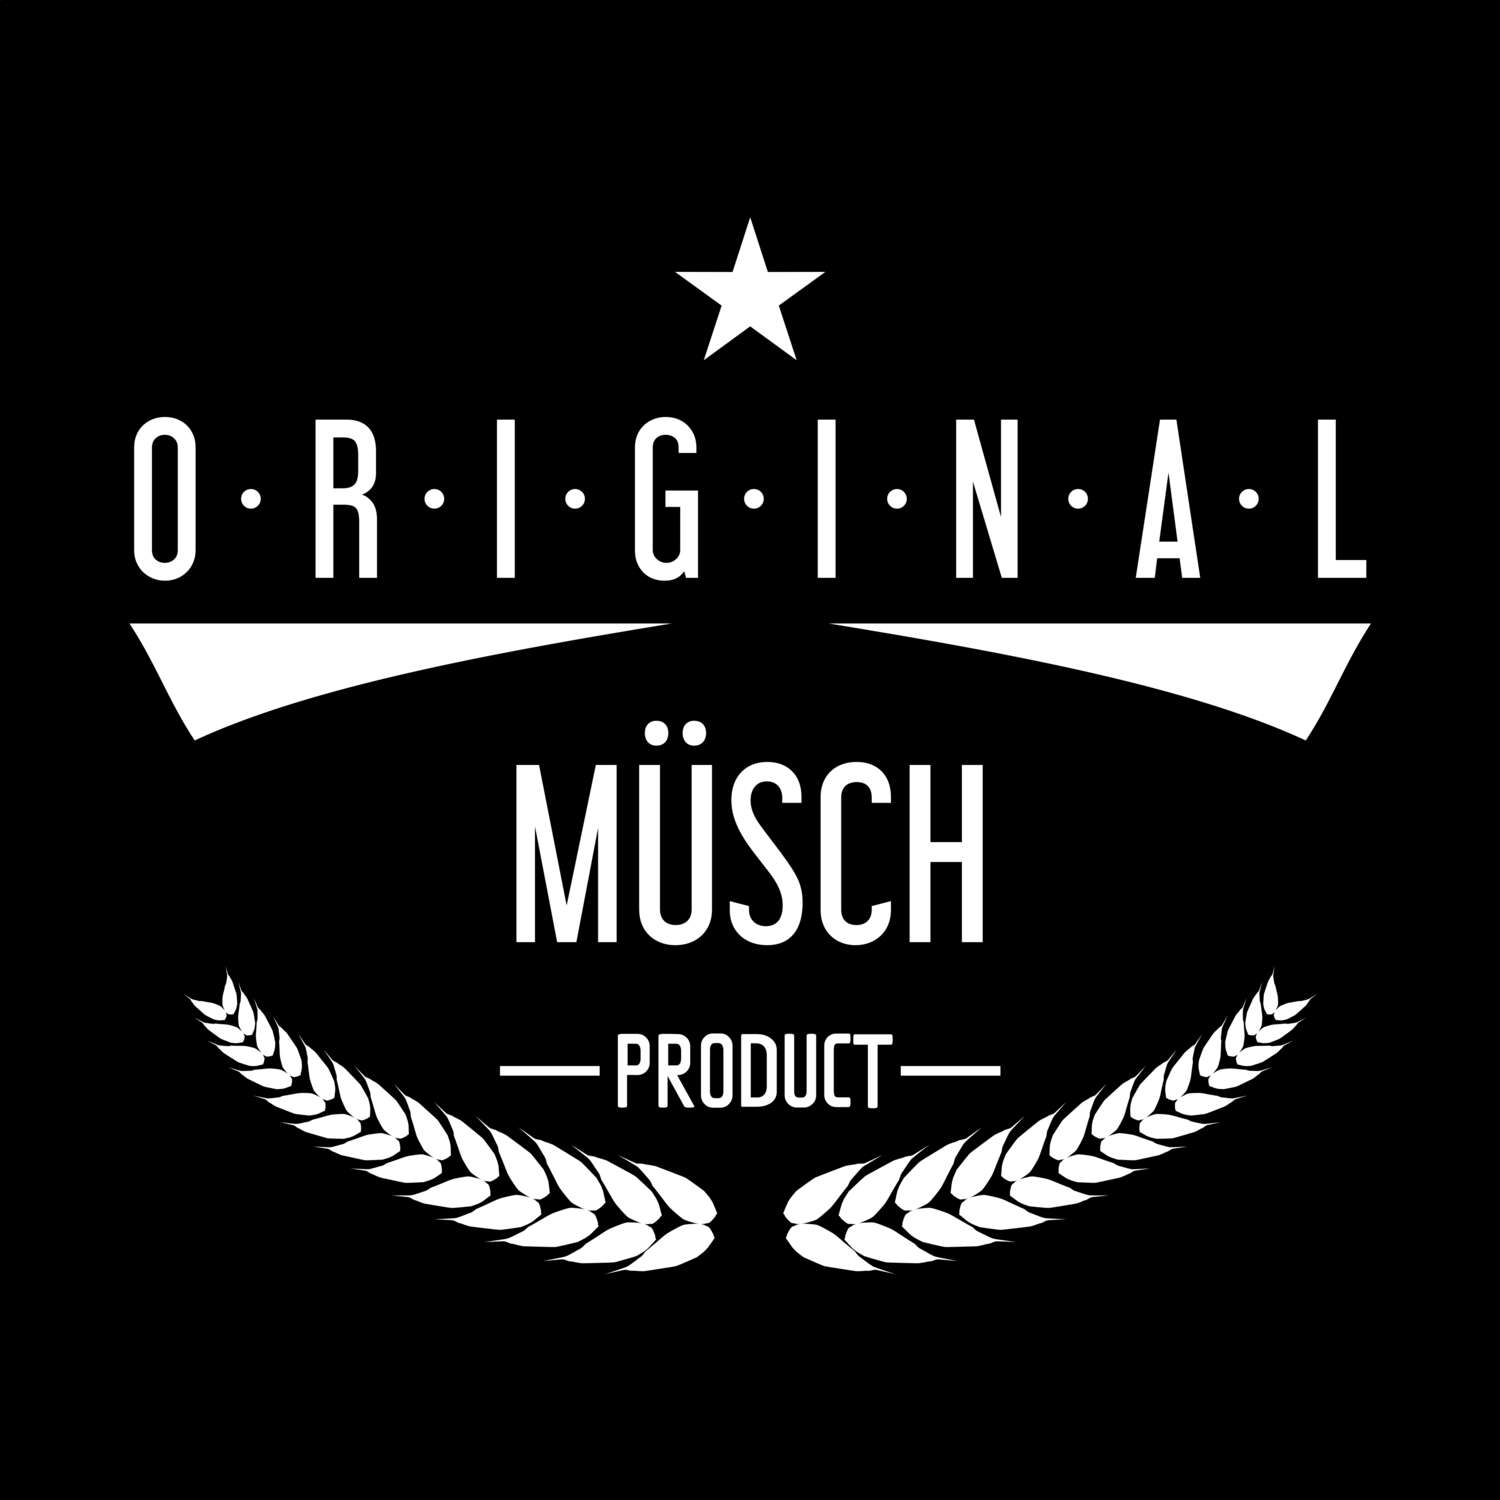 Müsch T-Shirt »Original Product«